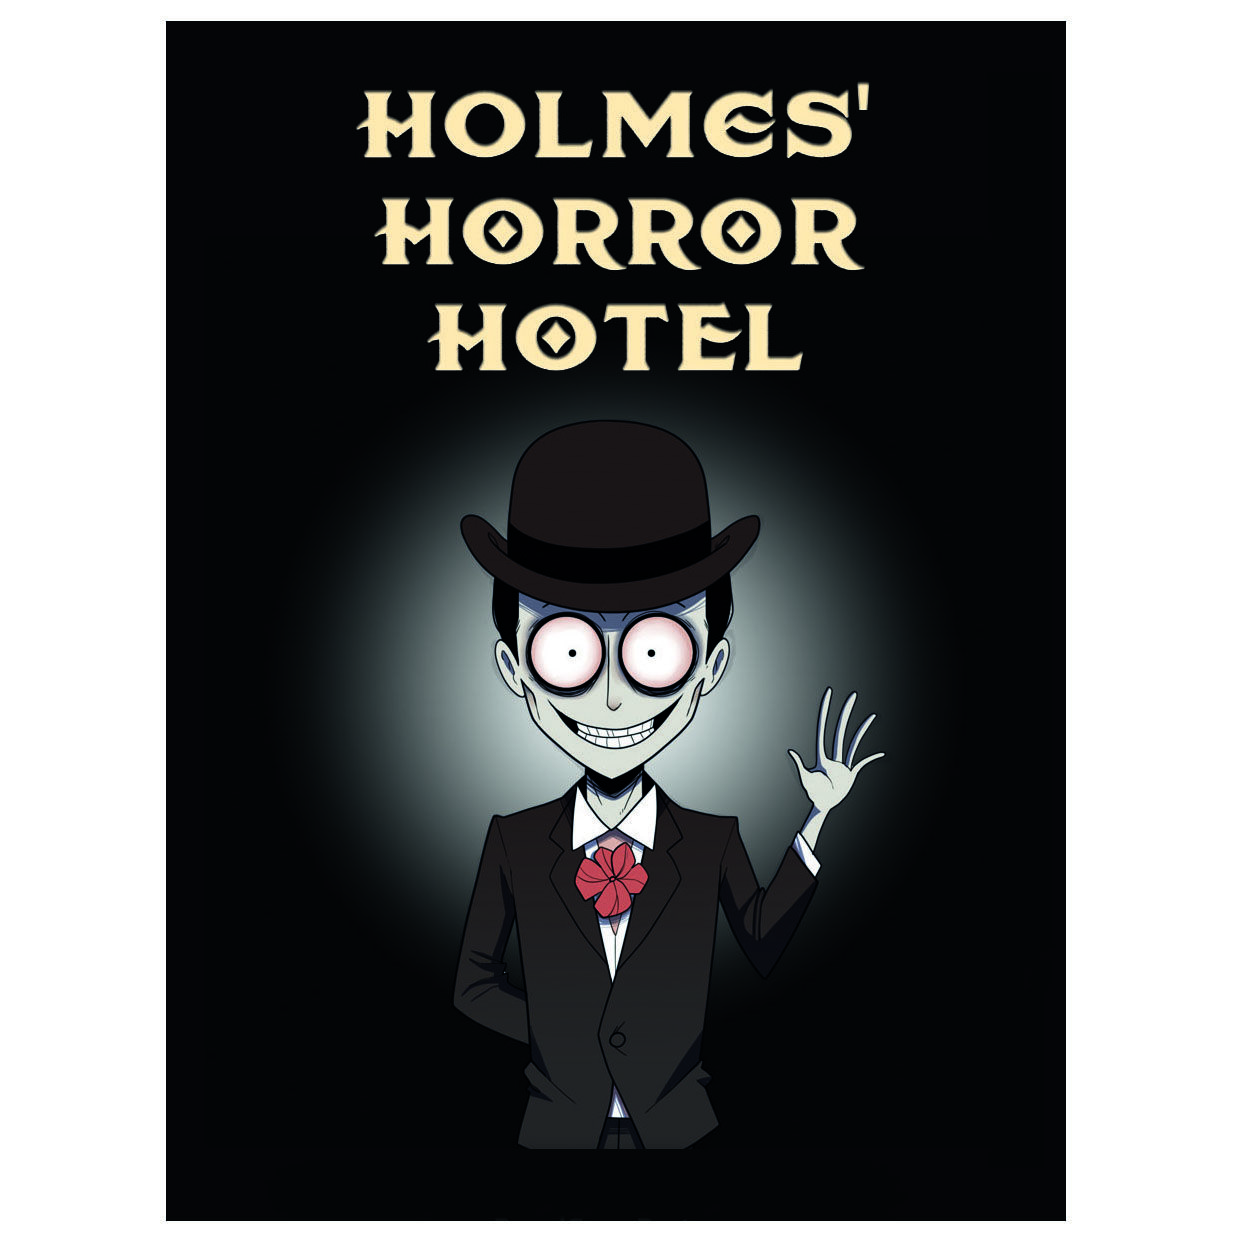 Holmes’ Horror Hotel